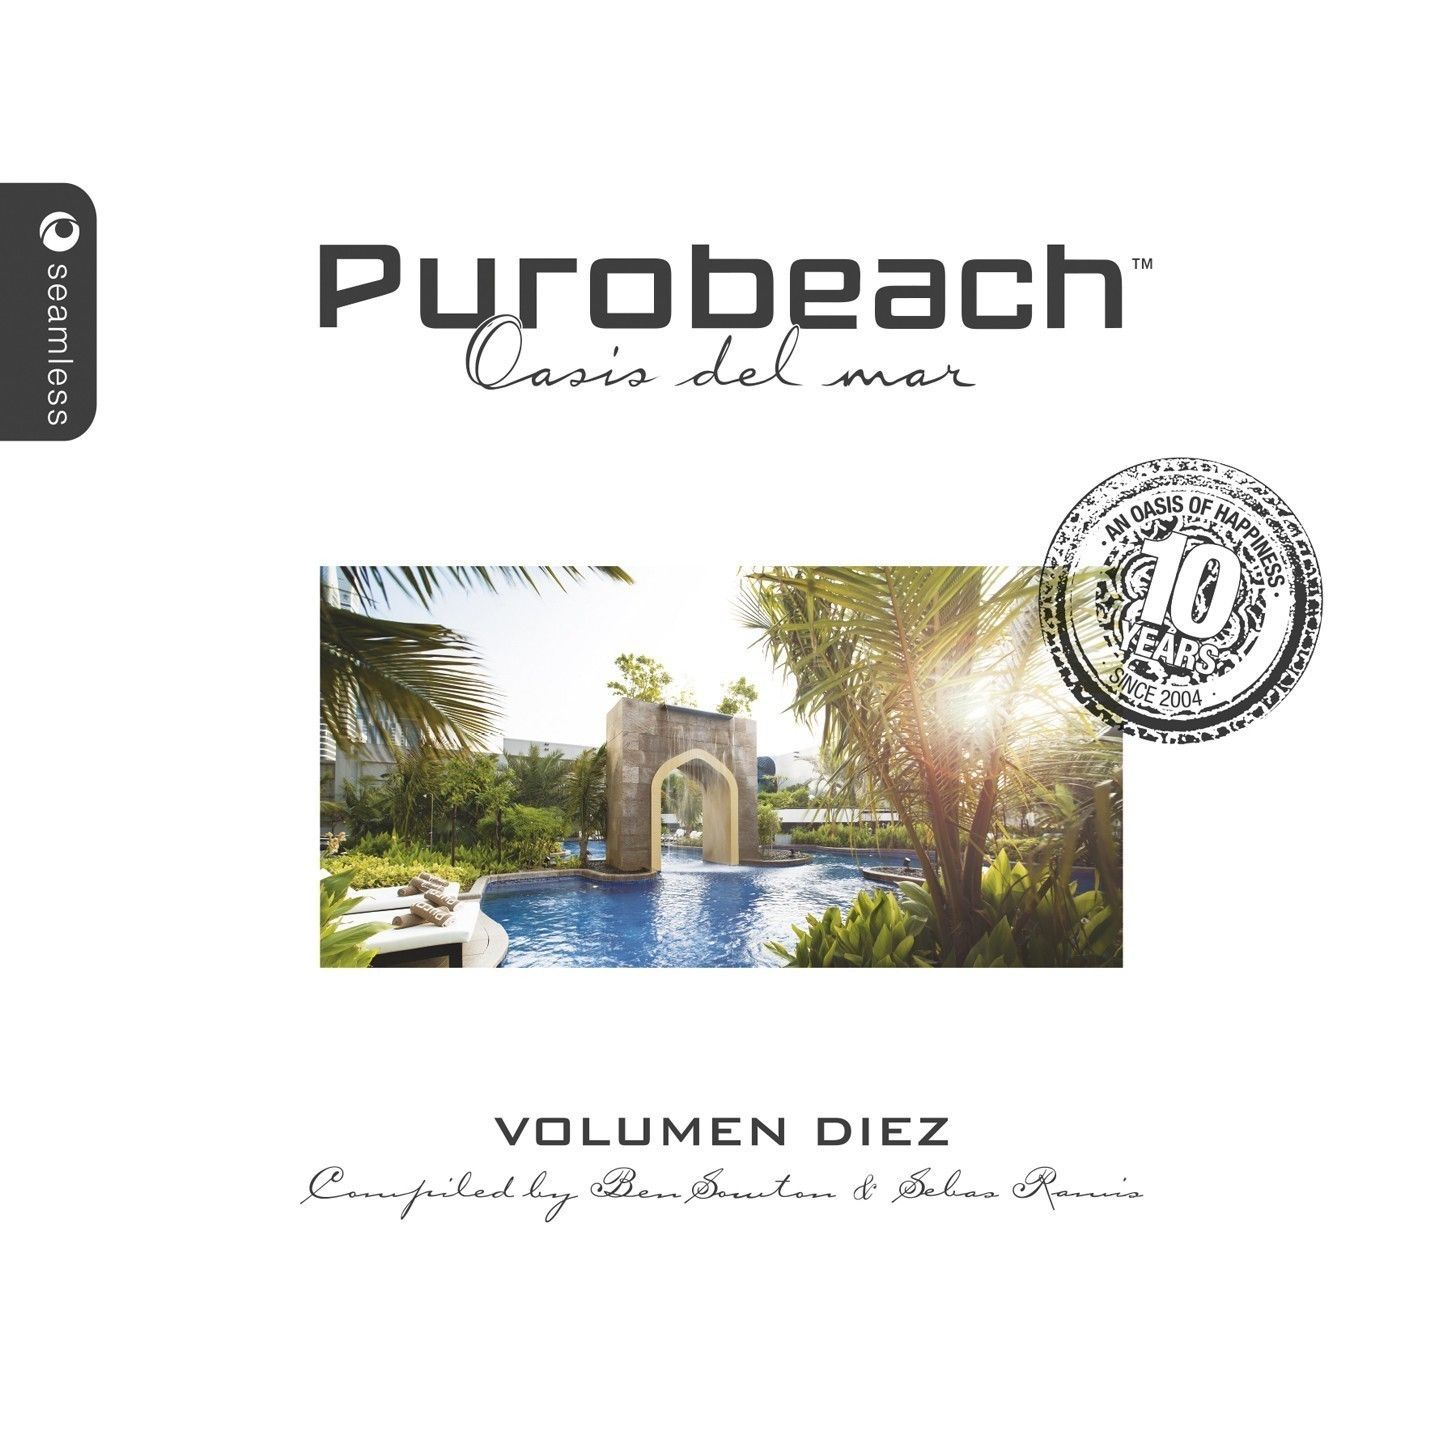 purobeach-volumen-diez-v2-seal-1440x1440.jpg